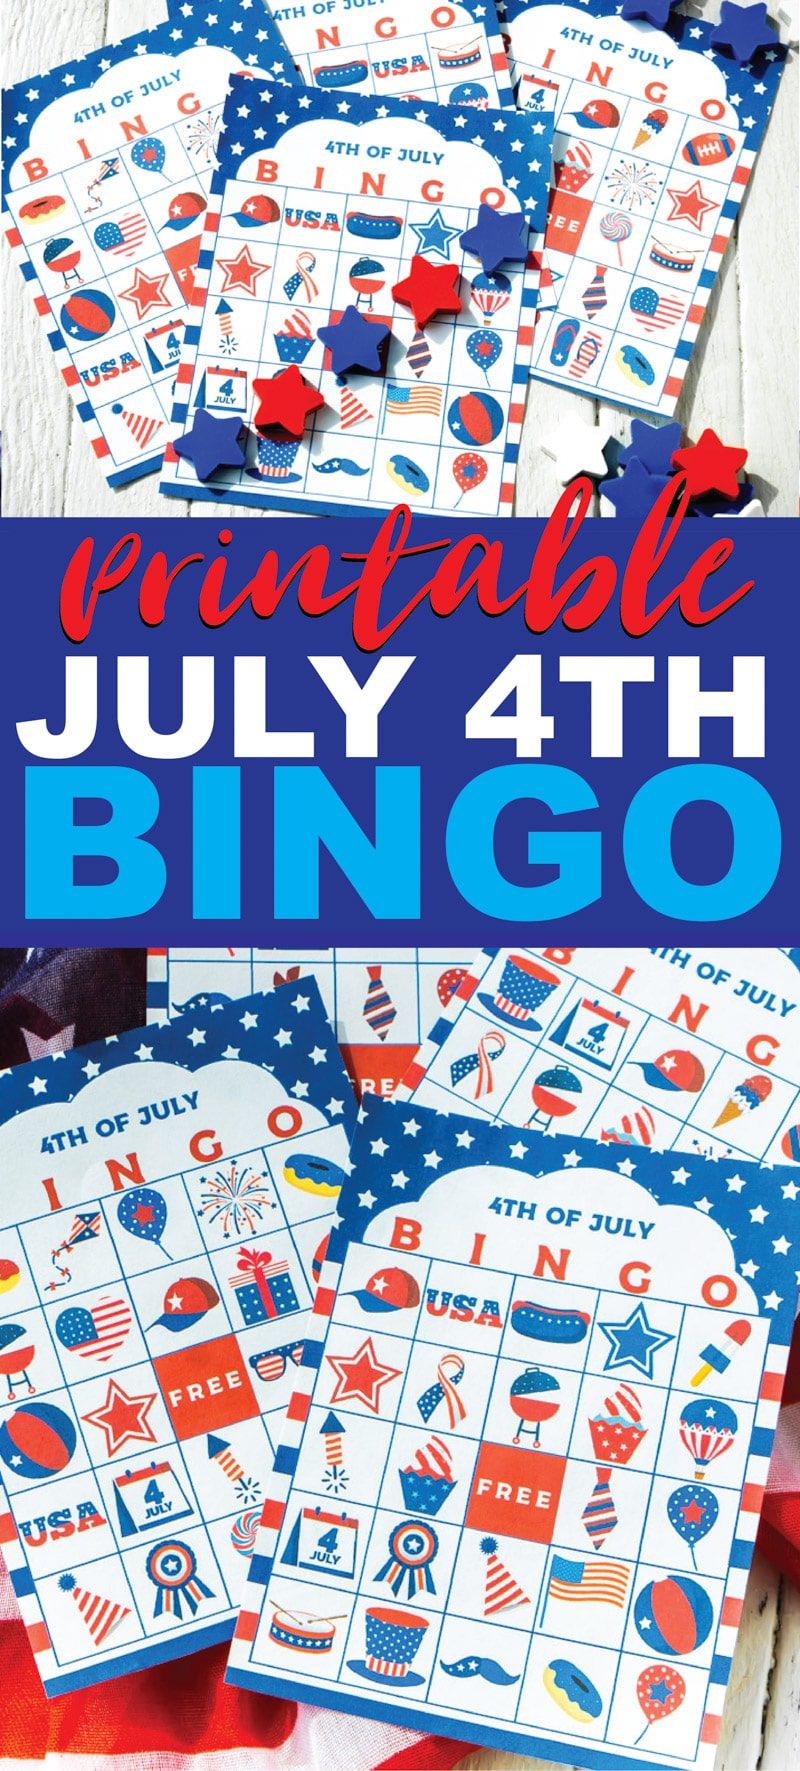 Tato hra s bingo ze 4. července je ideální pro děti, dospělé nebo dospívající, kteří si hrají při čekání na ohňostroj! Jednoduché vytiskněte si zdarma tisknutelné karty, rozdejte značky a začněte hrát! Jedna z nejlepších aktivit pro vnitřní i venkovní párty!